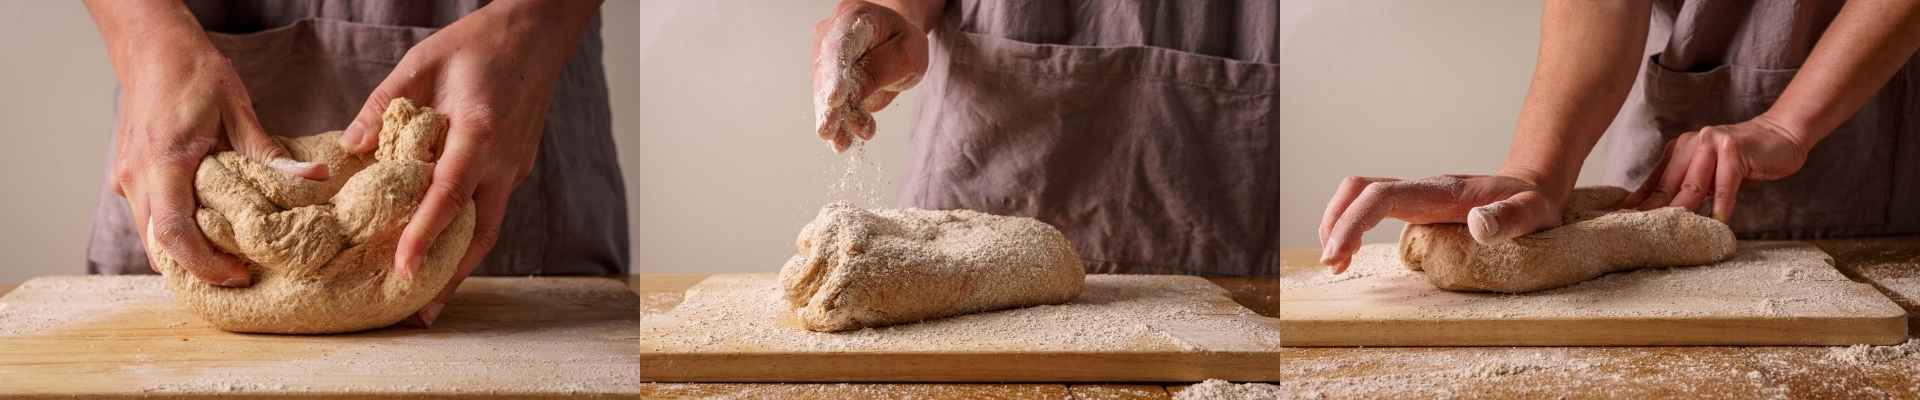 Baker Branding Kneading Bread